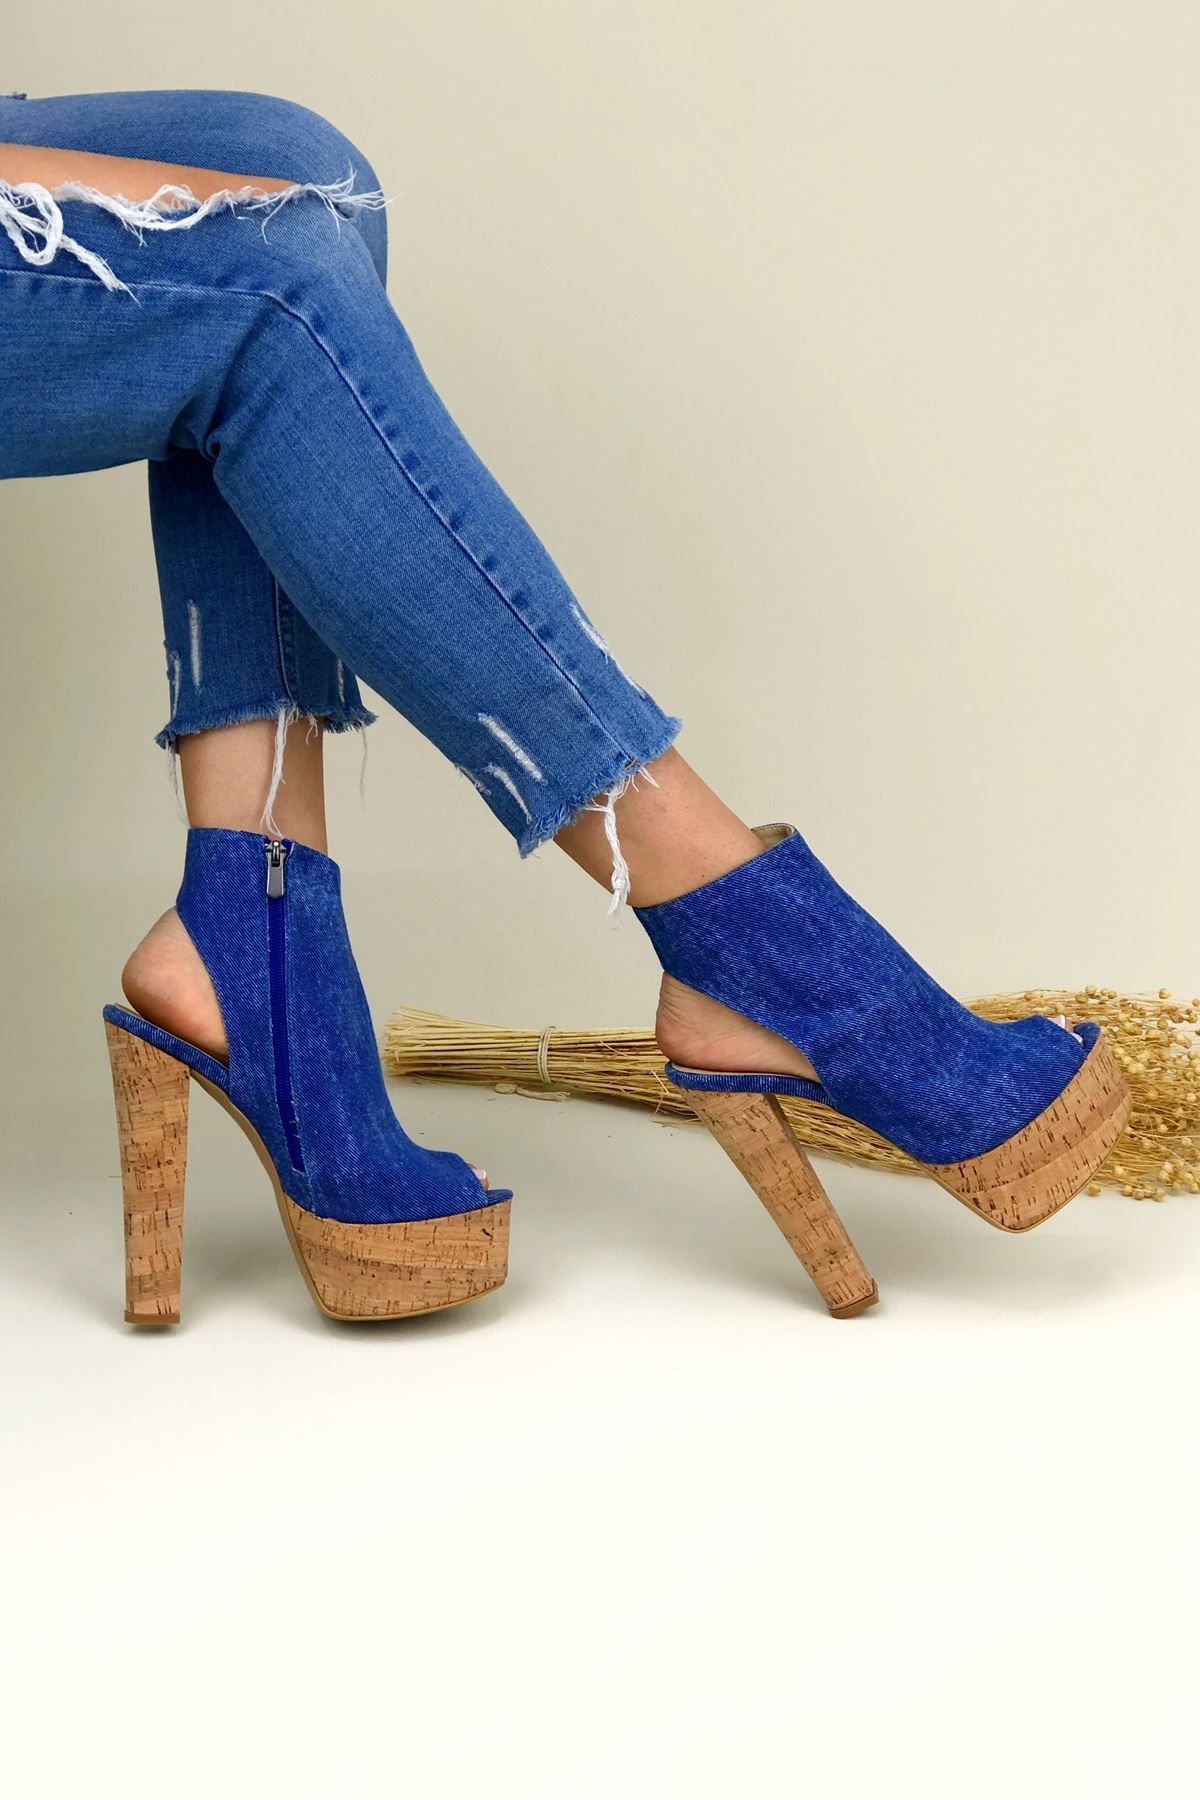 Tonya Kot - Mantar Kadın Platform Ayakkabı